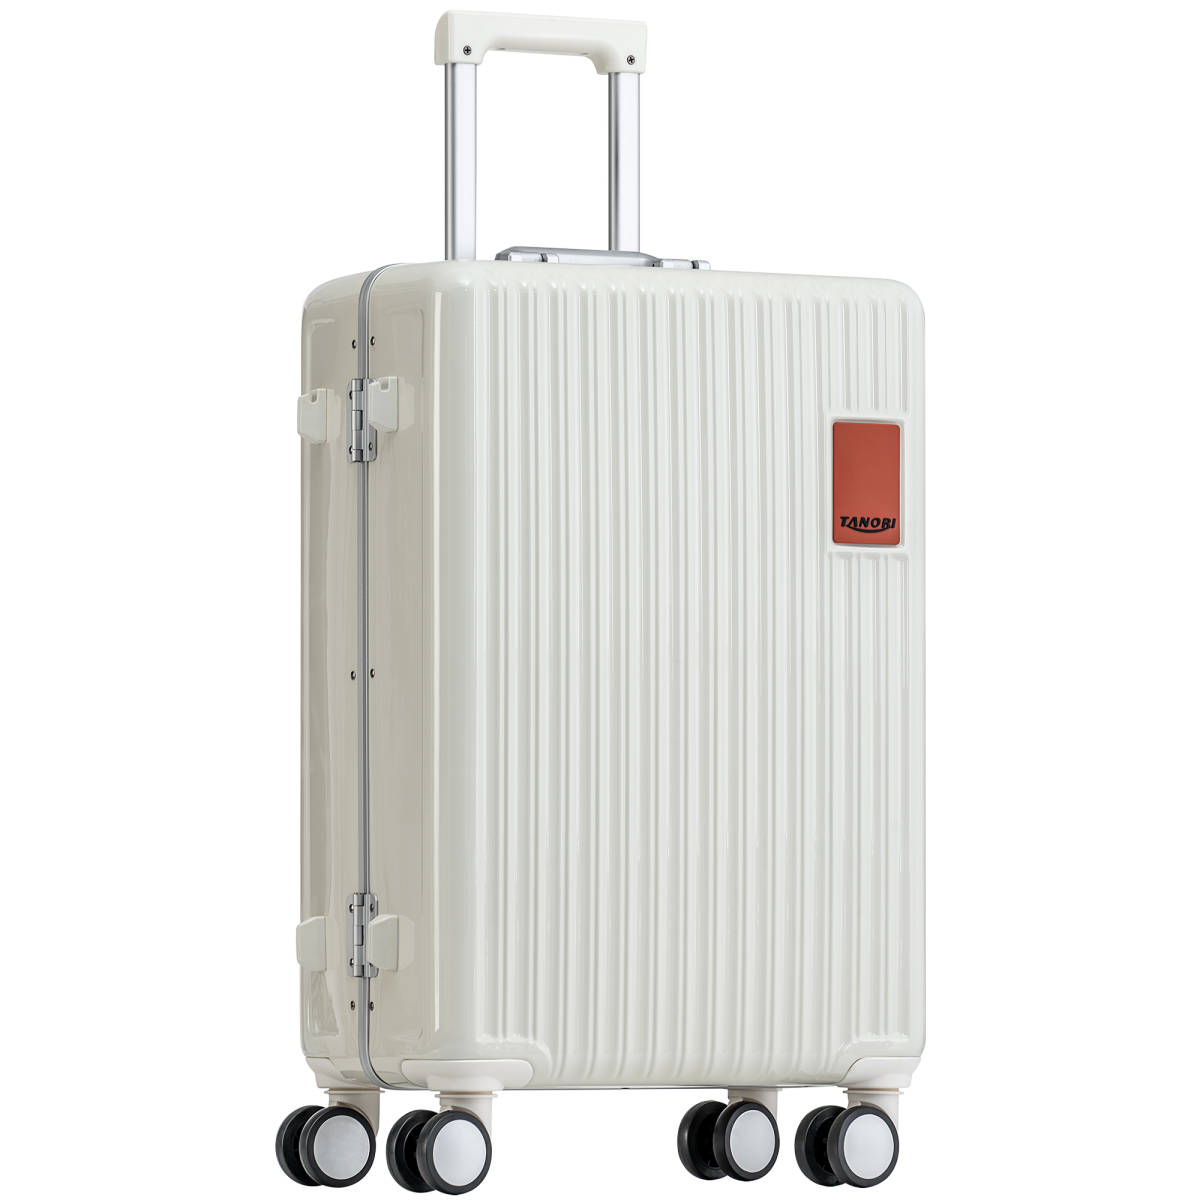 セール 登場から人気沸騰 高品質スーツケース キャリーケース Sサイズ ゴールド STS-GD